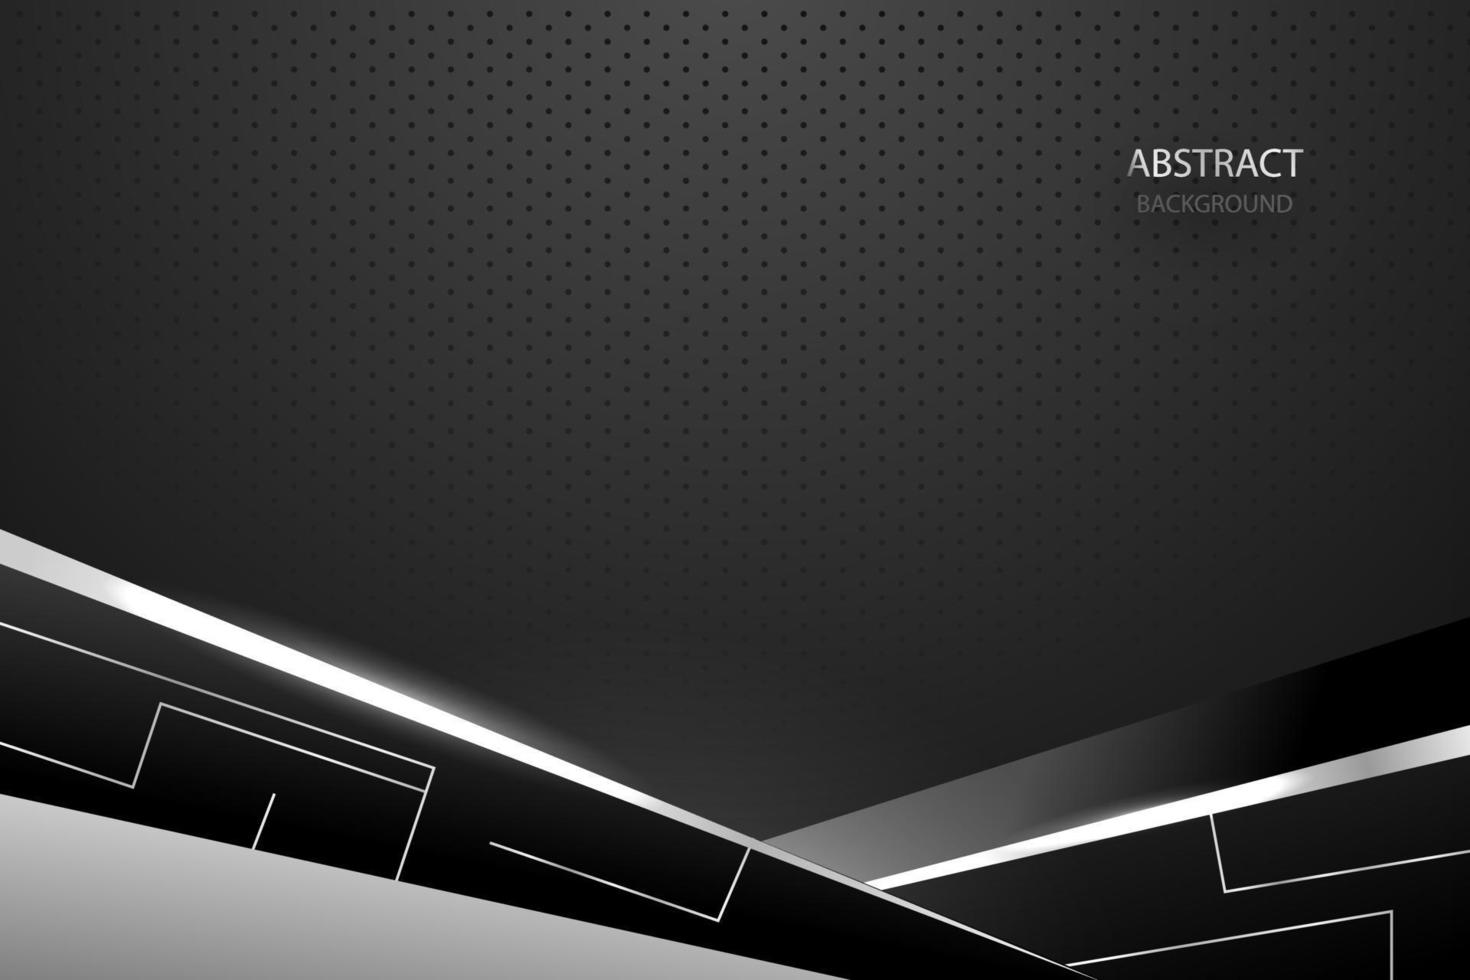 luz cinza escura abstrata em metal preto com design de malha de círculo. ilustração em vetor fundo de aço de tecnologia futurista de luxo moderno